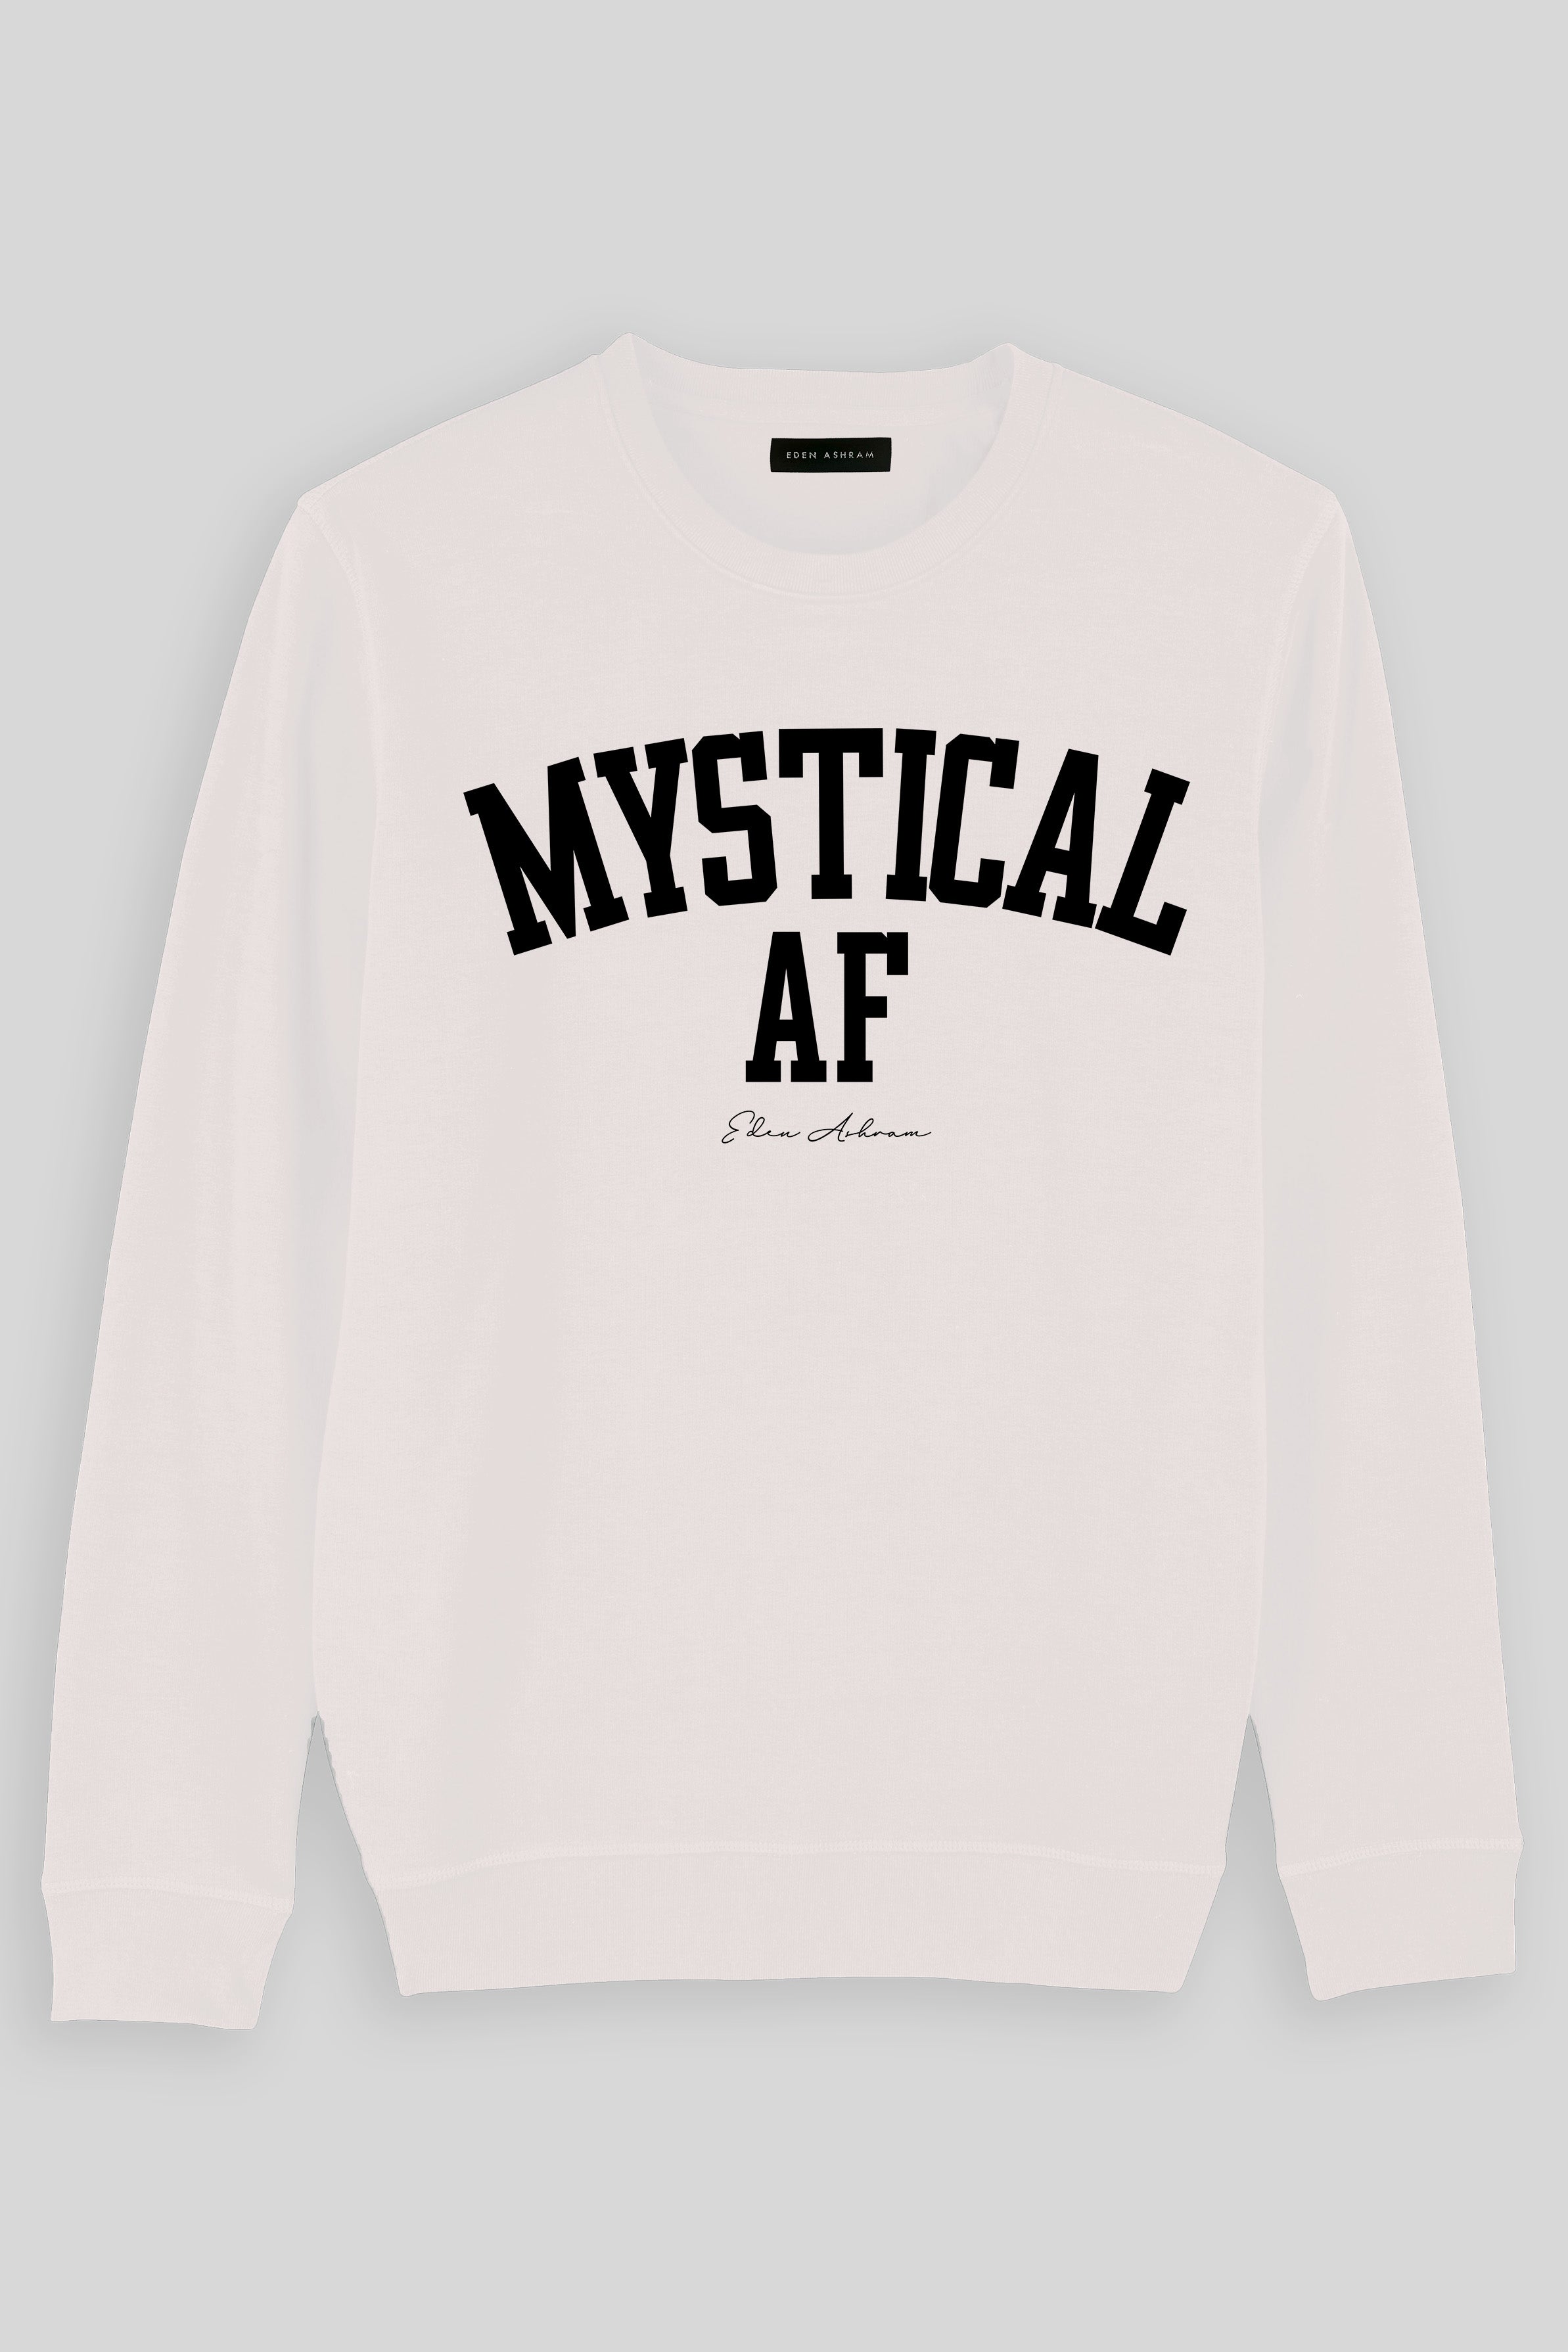 EDEN ASHRAM Mystical AF Premium Crew Neck Sweatshirt Vintage White